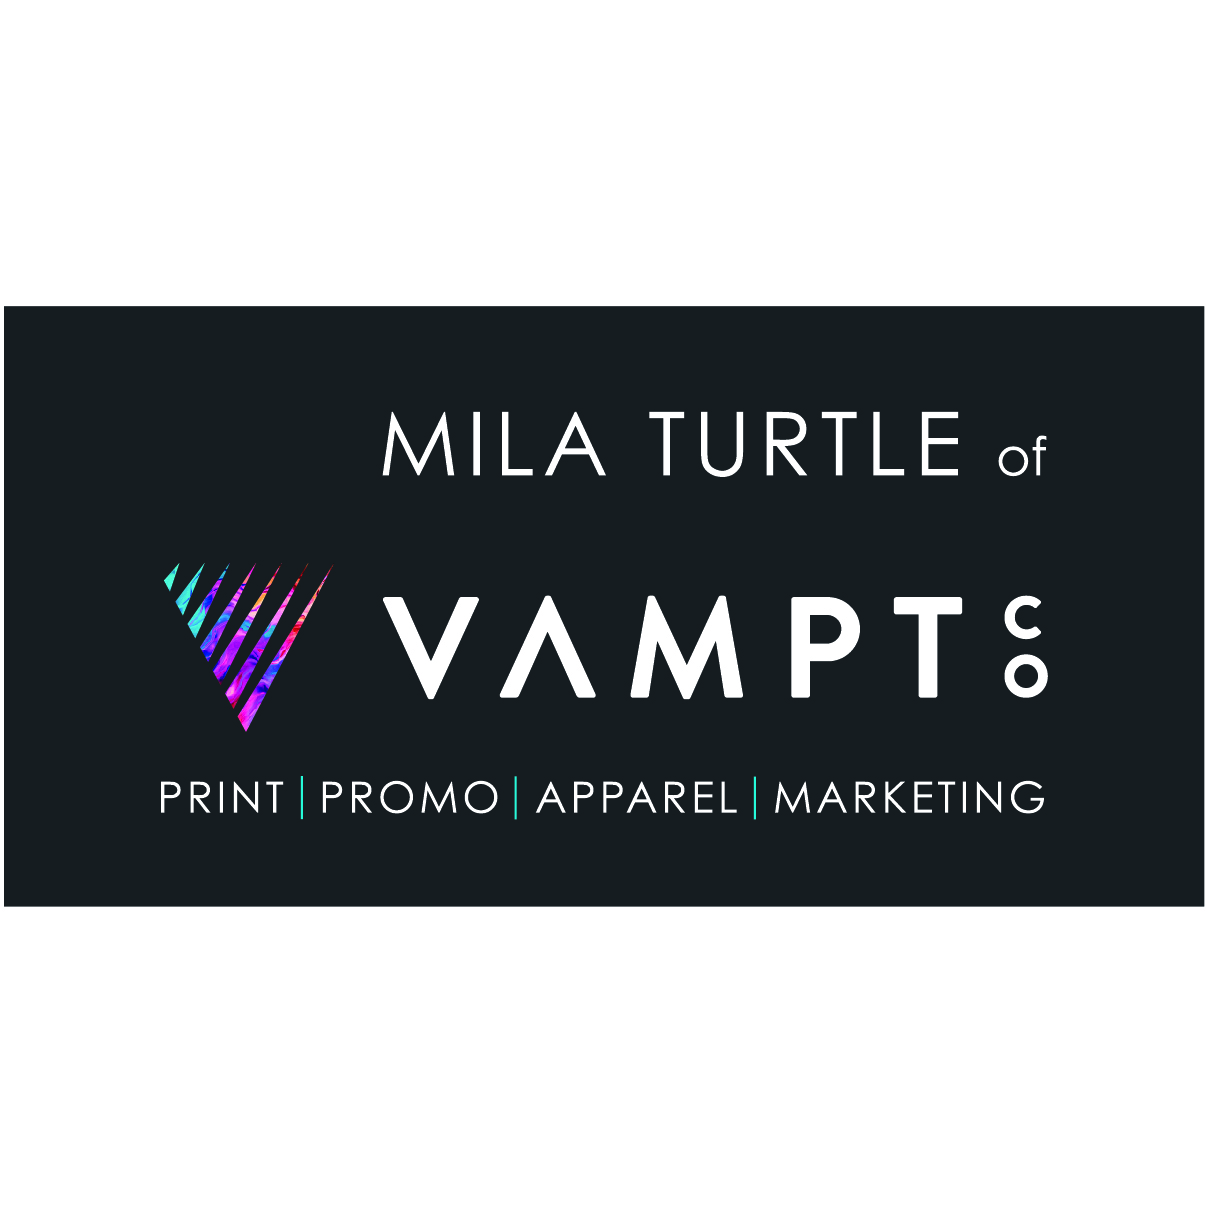 Mila Turtle at VAMPT